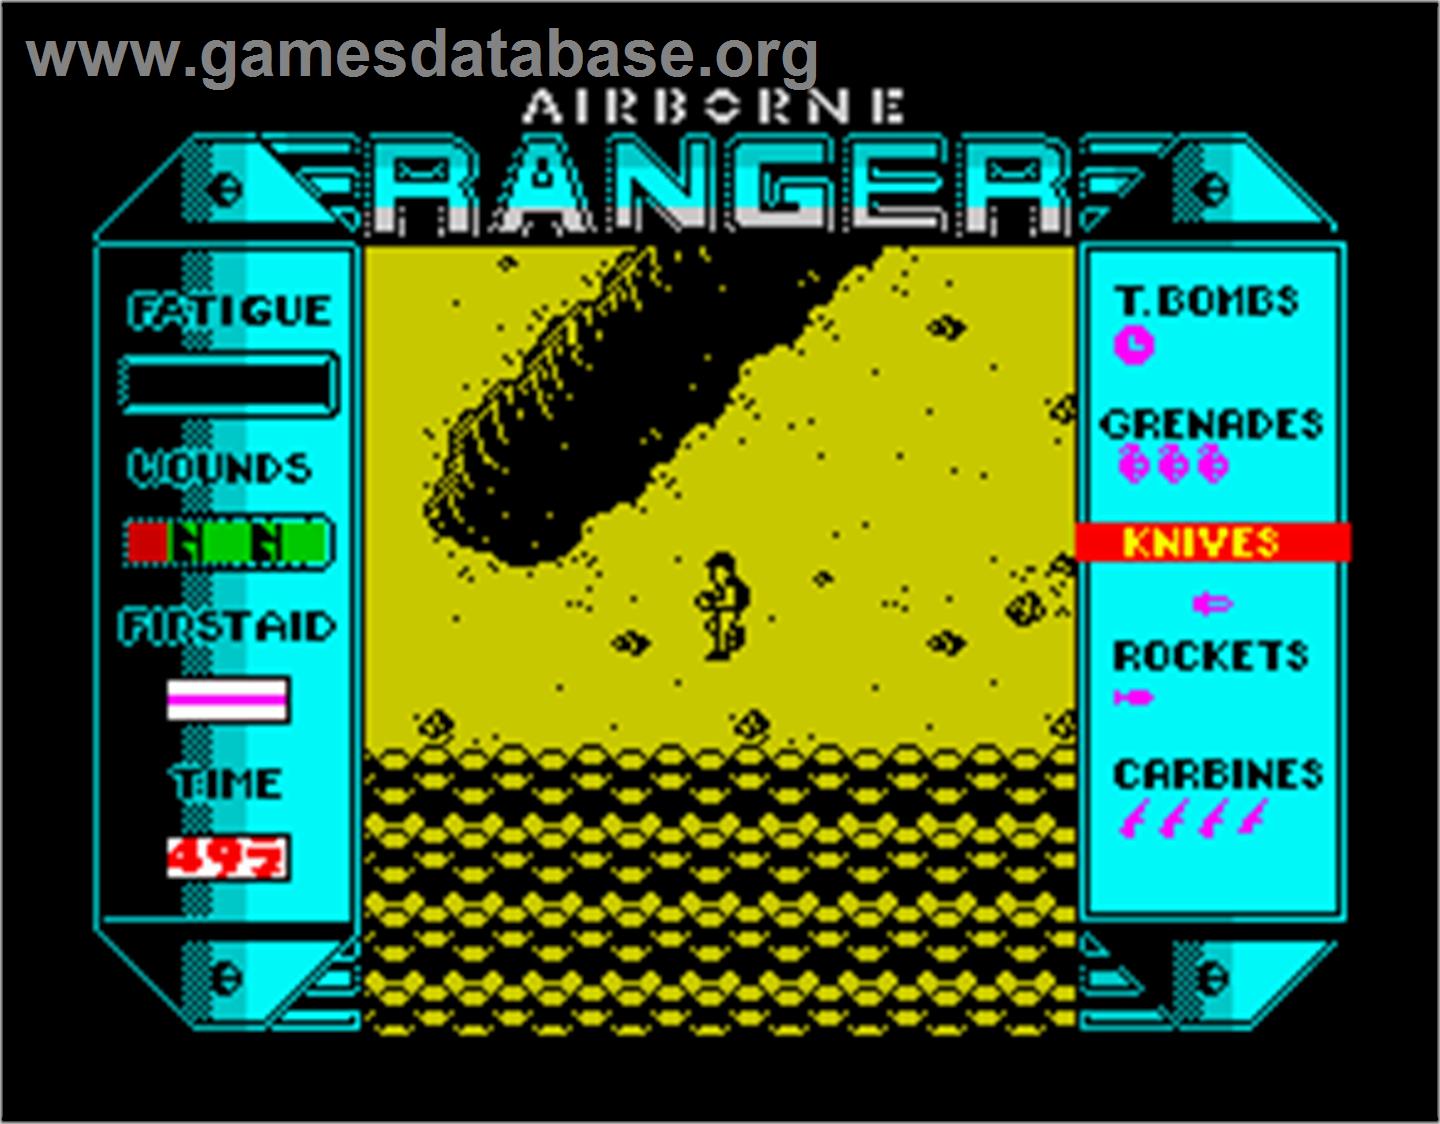 Airborne Ranger - Sinclair ZX Spectrum - Artwork - In Game